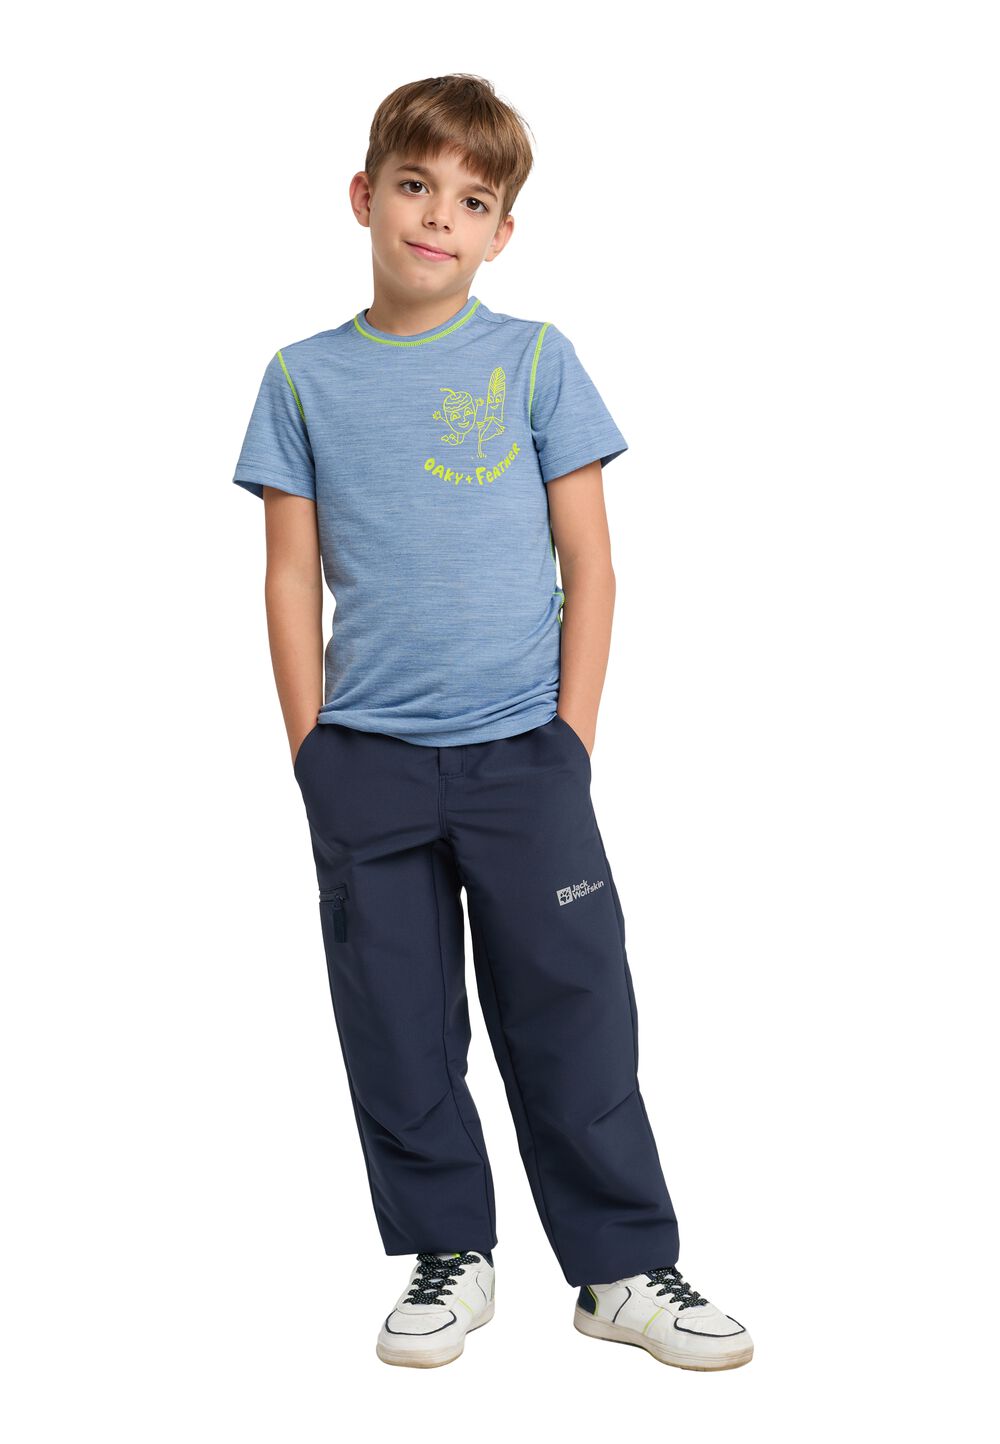 Jack Wolfskin Merino Graphic T-Shirt Kids T-shirt van merinowol kinderen 152 ele tal blue ele tal blue